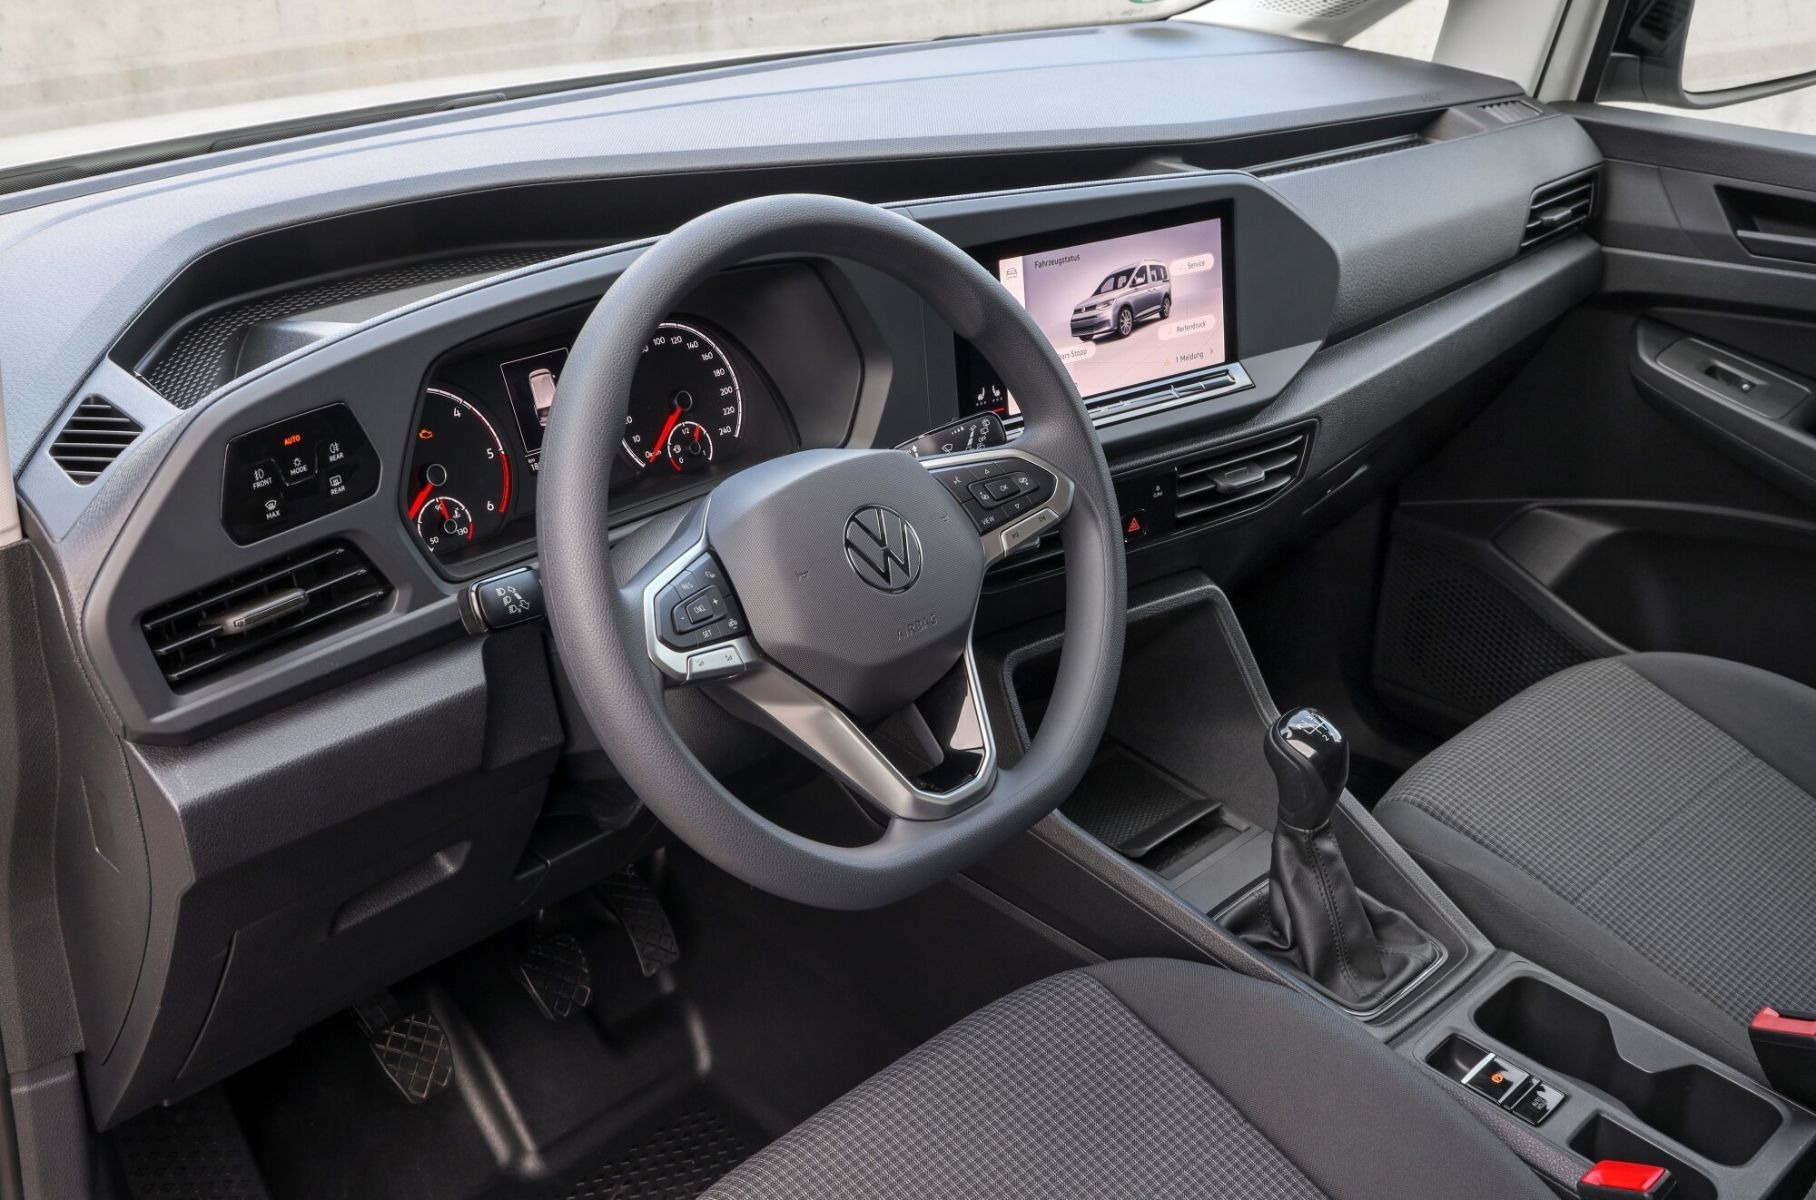 До России добрался новый Volkswagen Caddy: объявлены цены